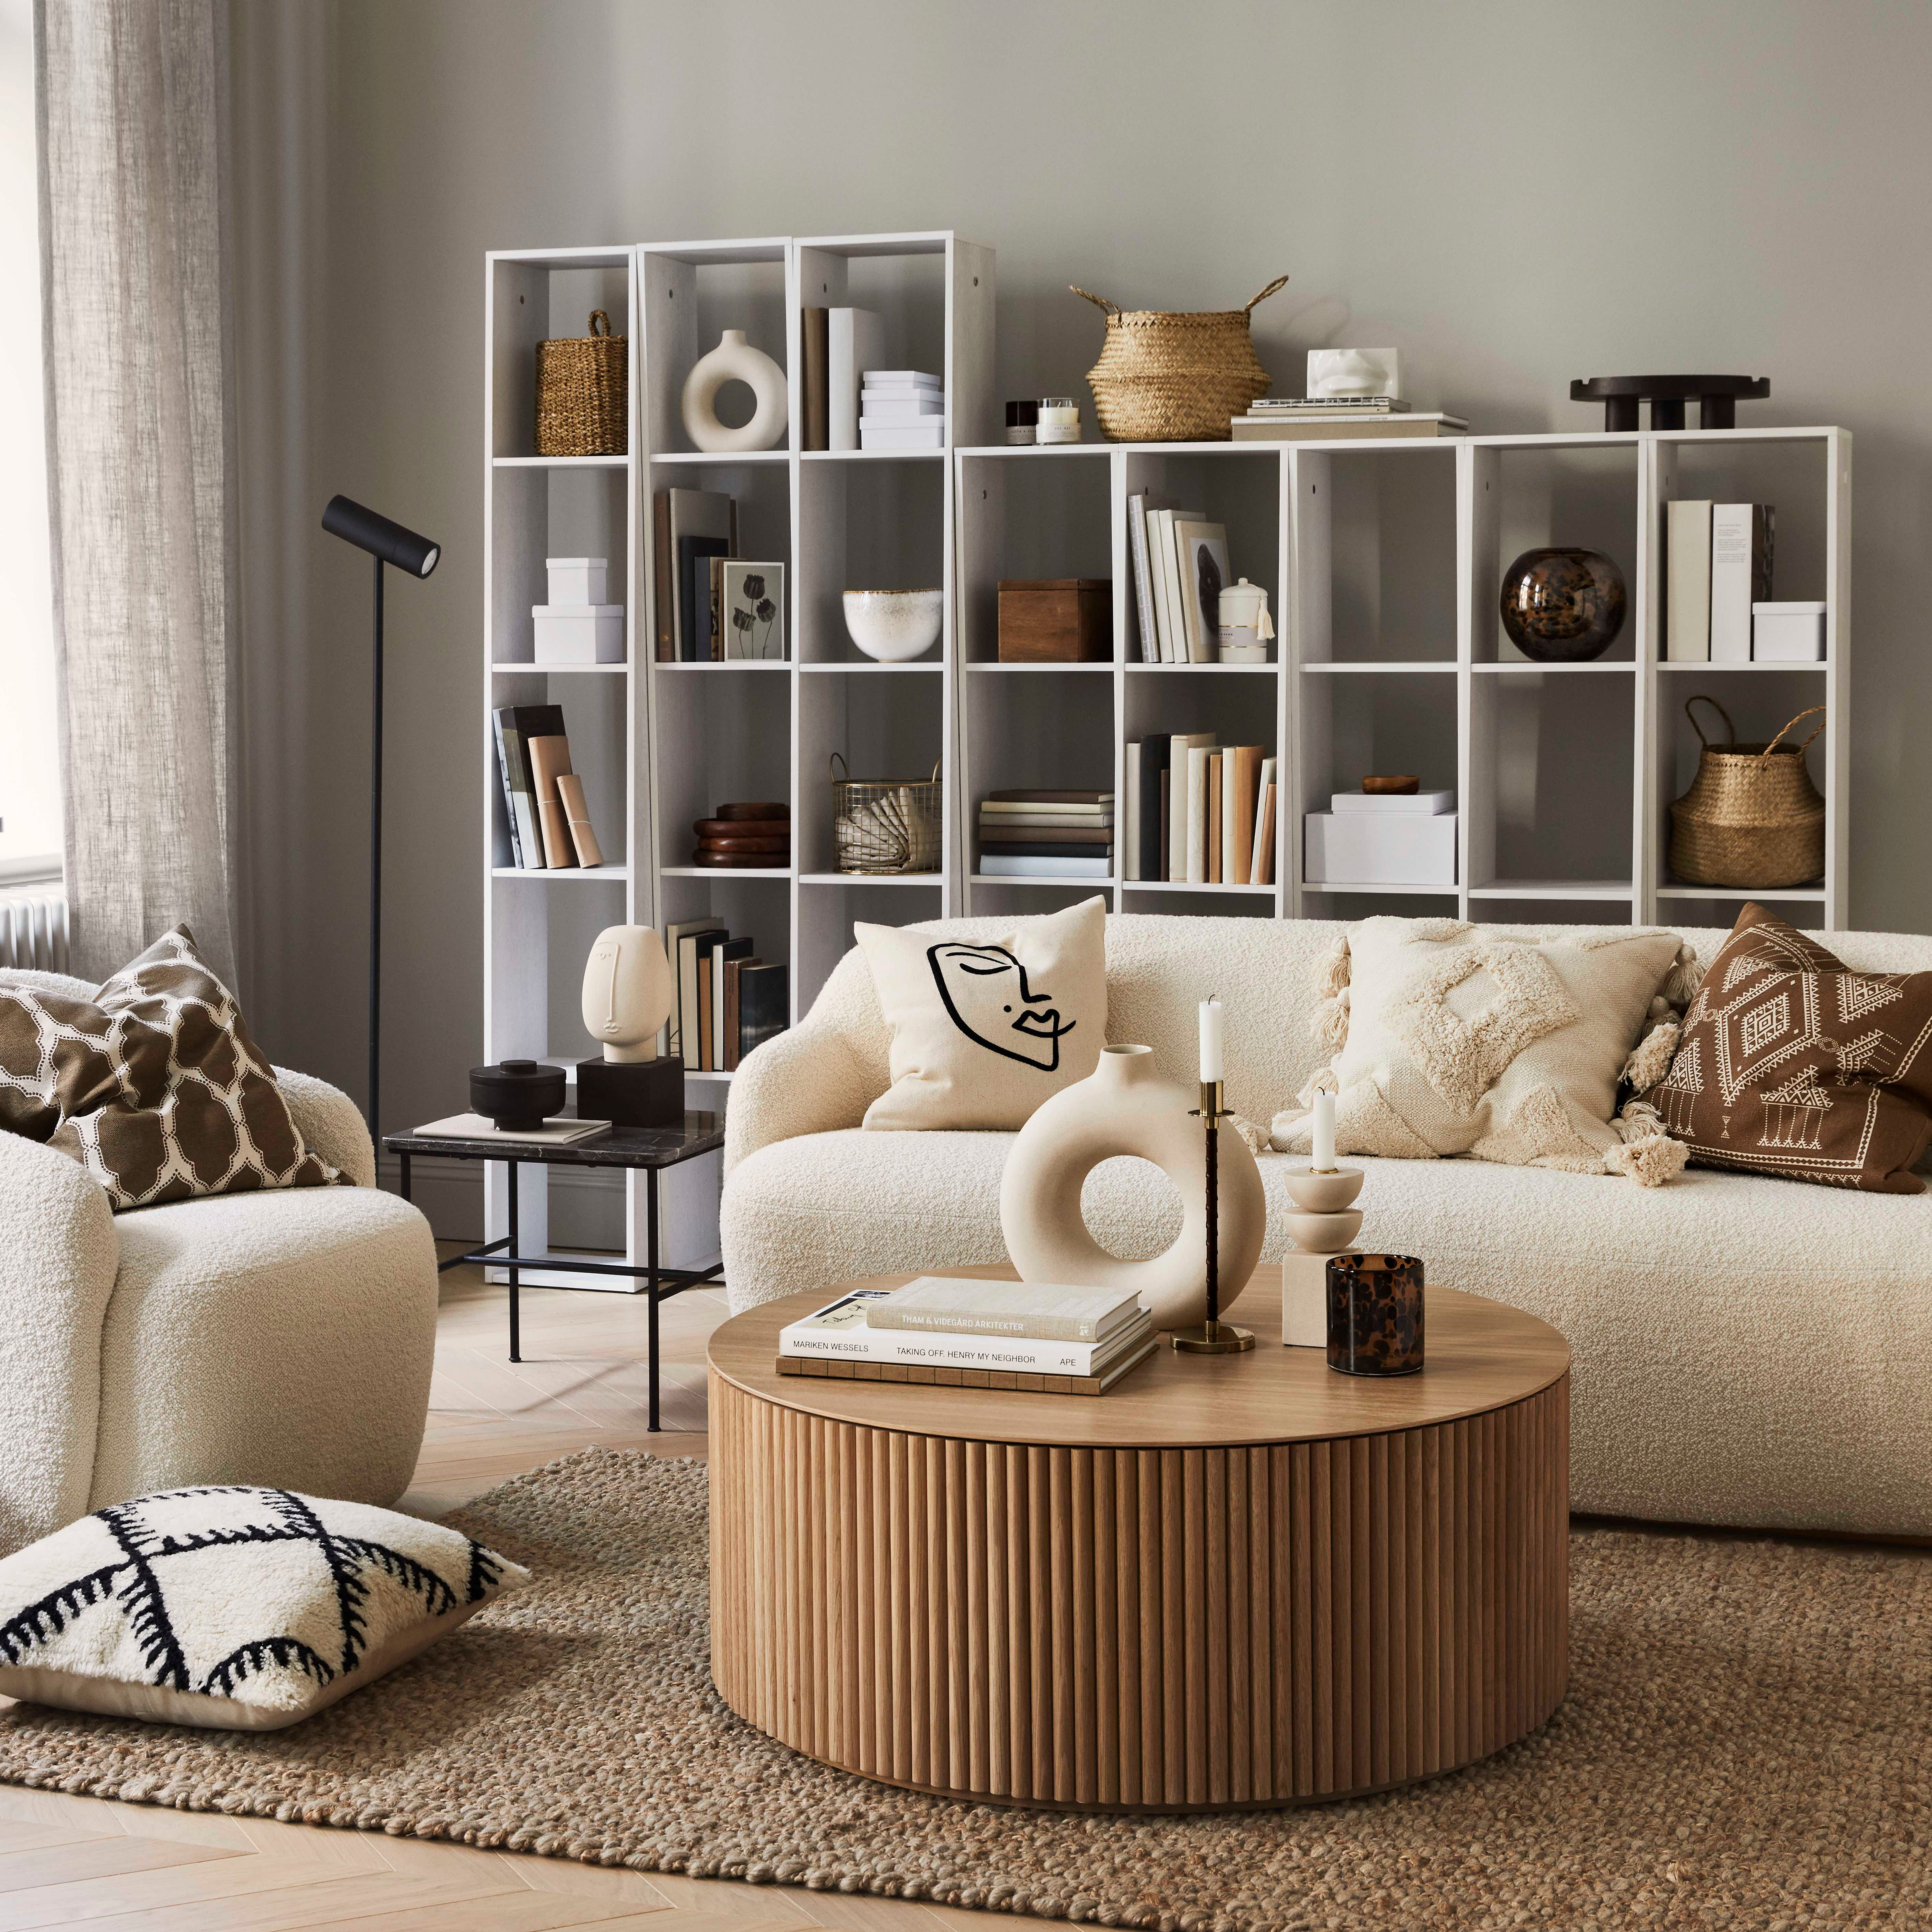 Canapé épais design : une tendance qui s'affirme  Décoration intérieure  canapé, Canapé contemporain, Canapé moelleux